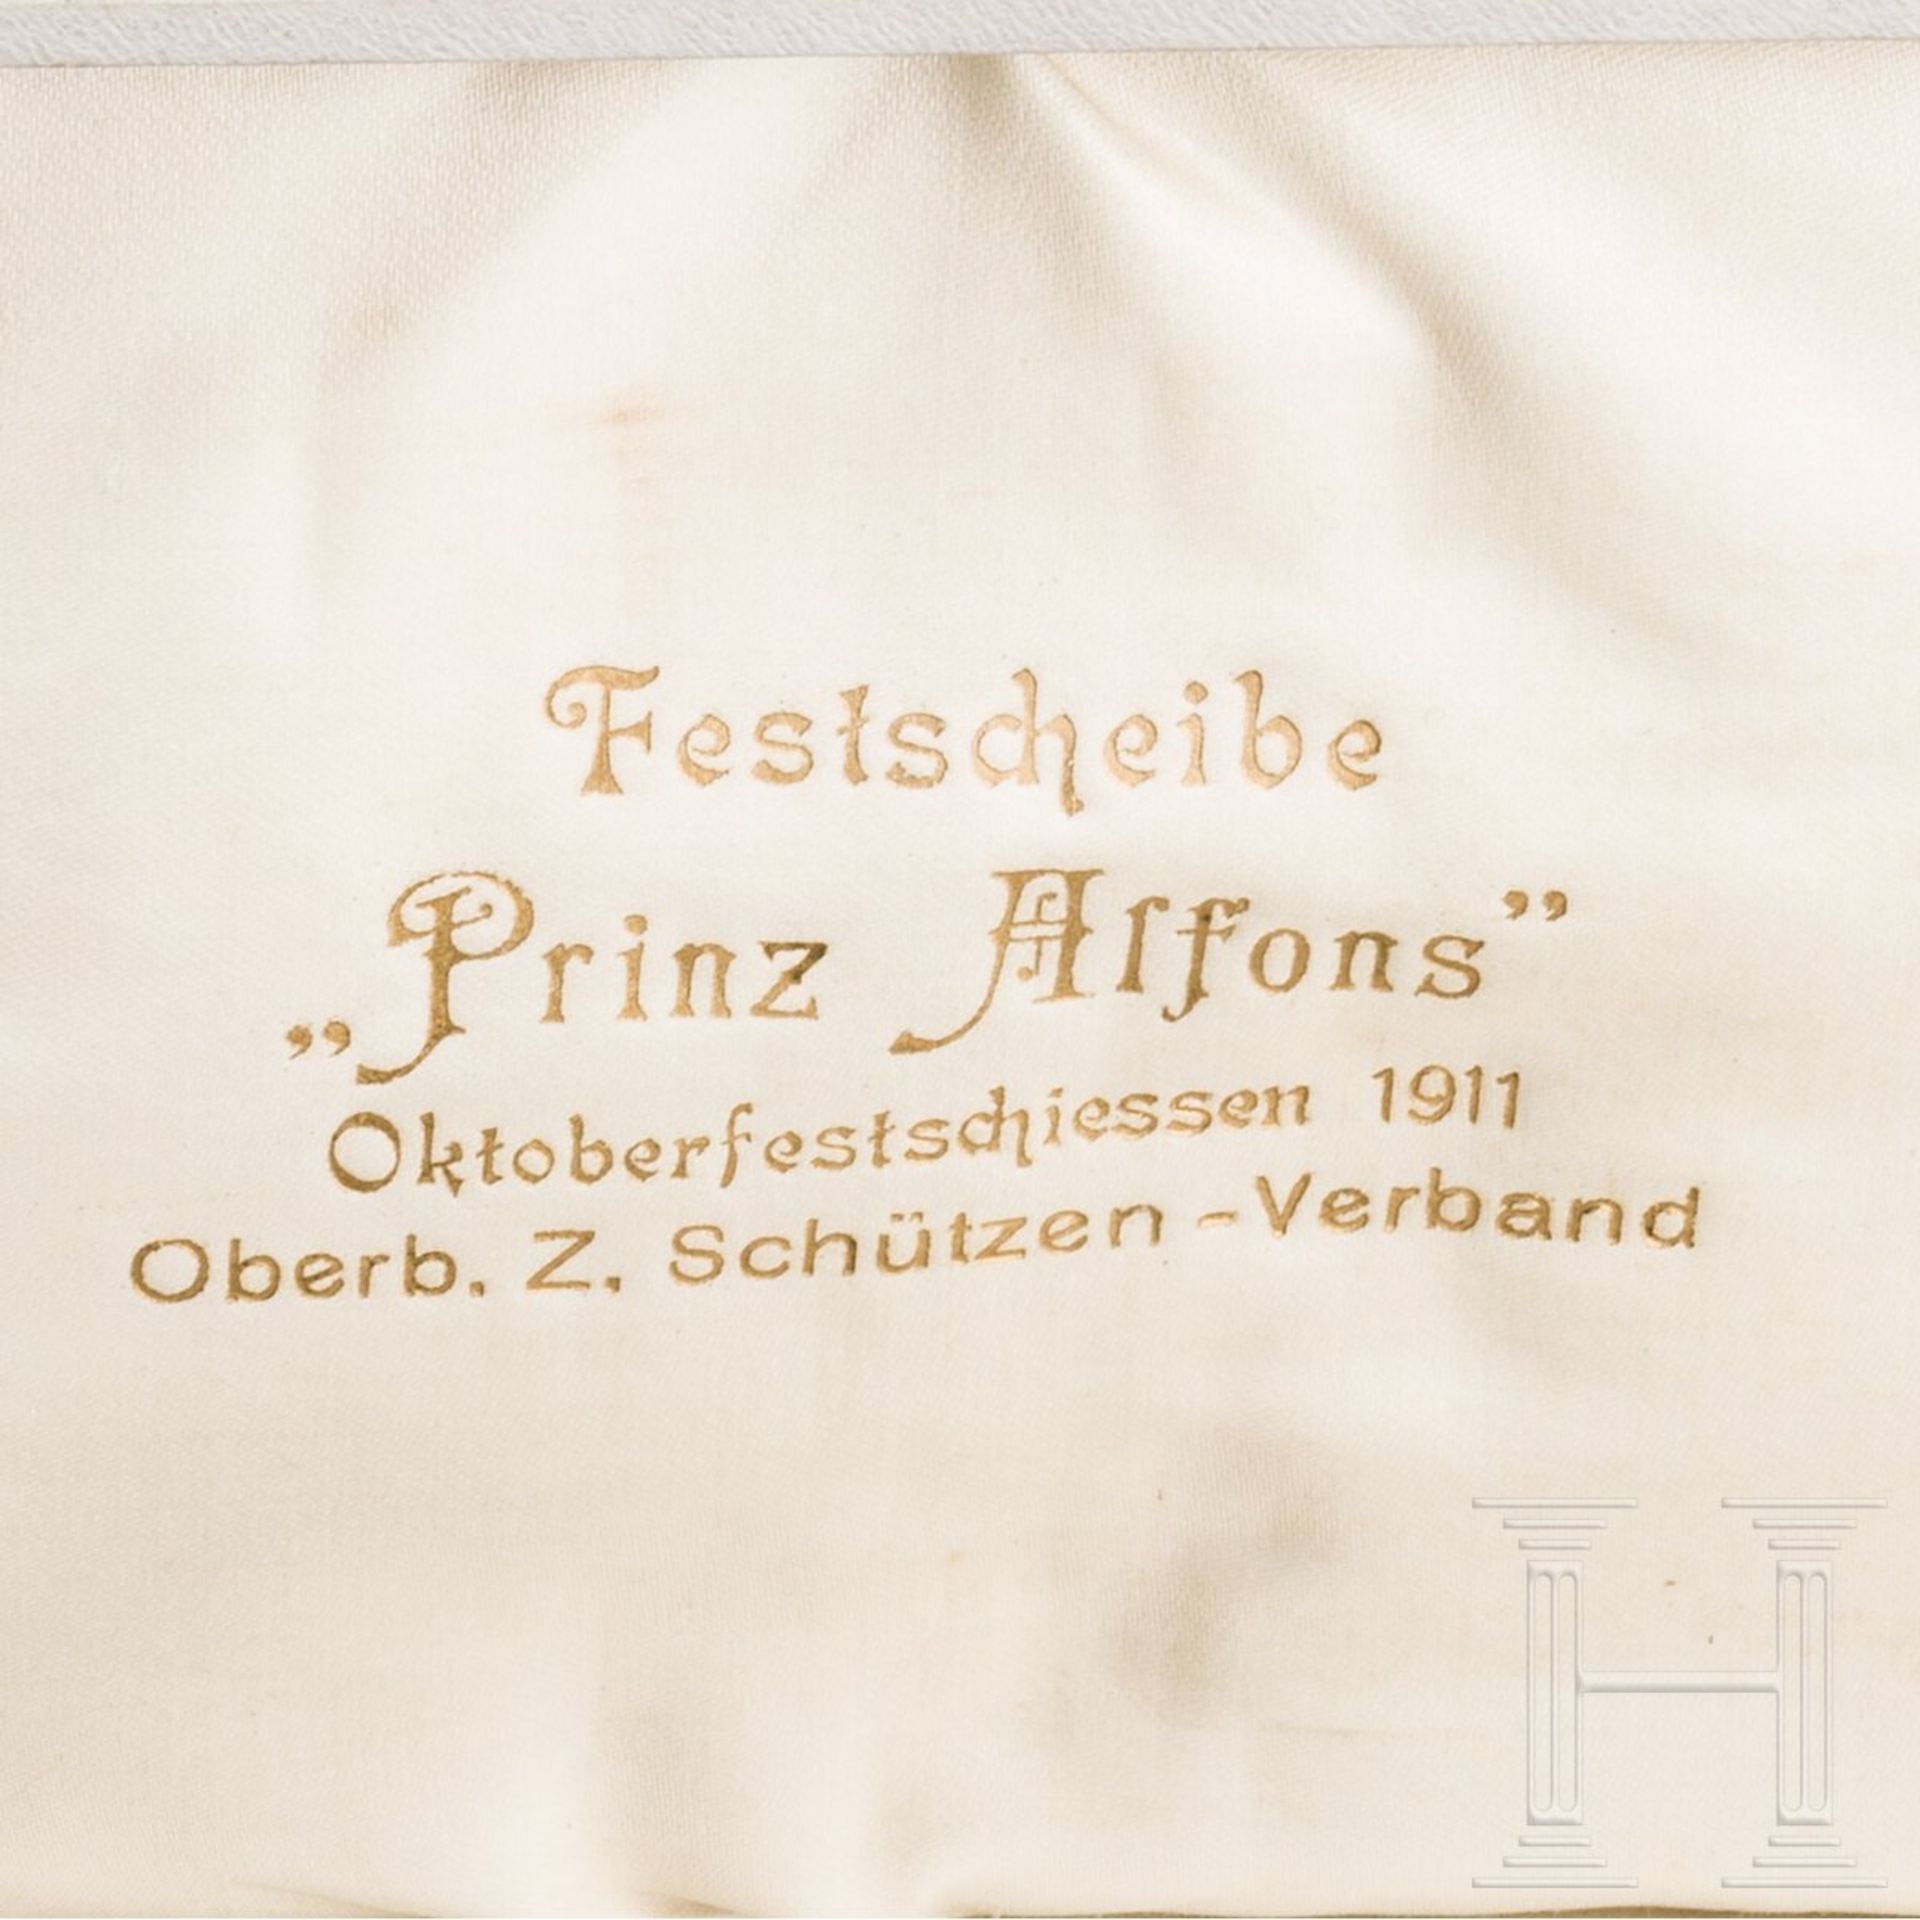 Silberbesteck als Preis zur Festscheibe "Prinz Alfons", Oktoberfestschießen 1911 - Image 4 of 4